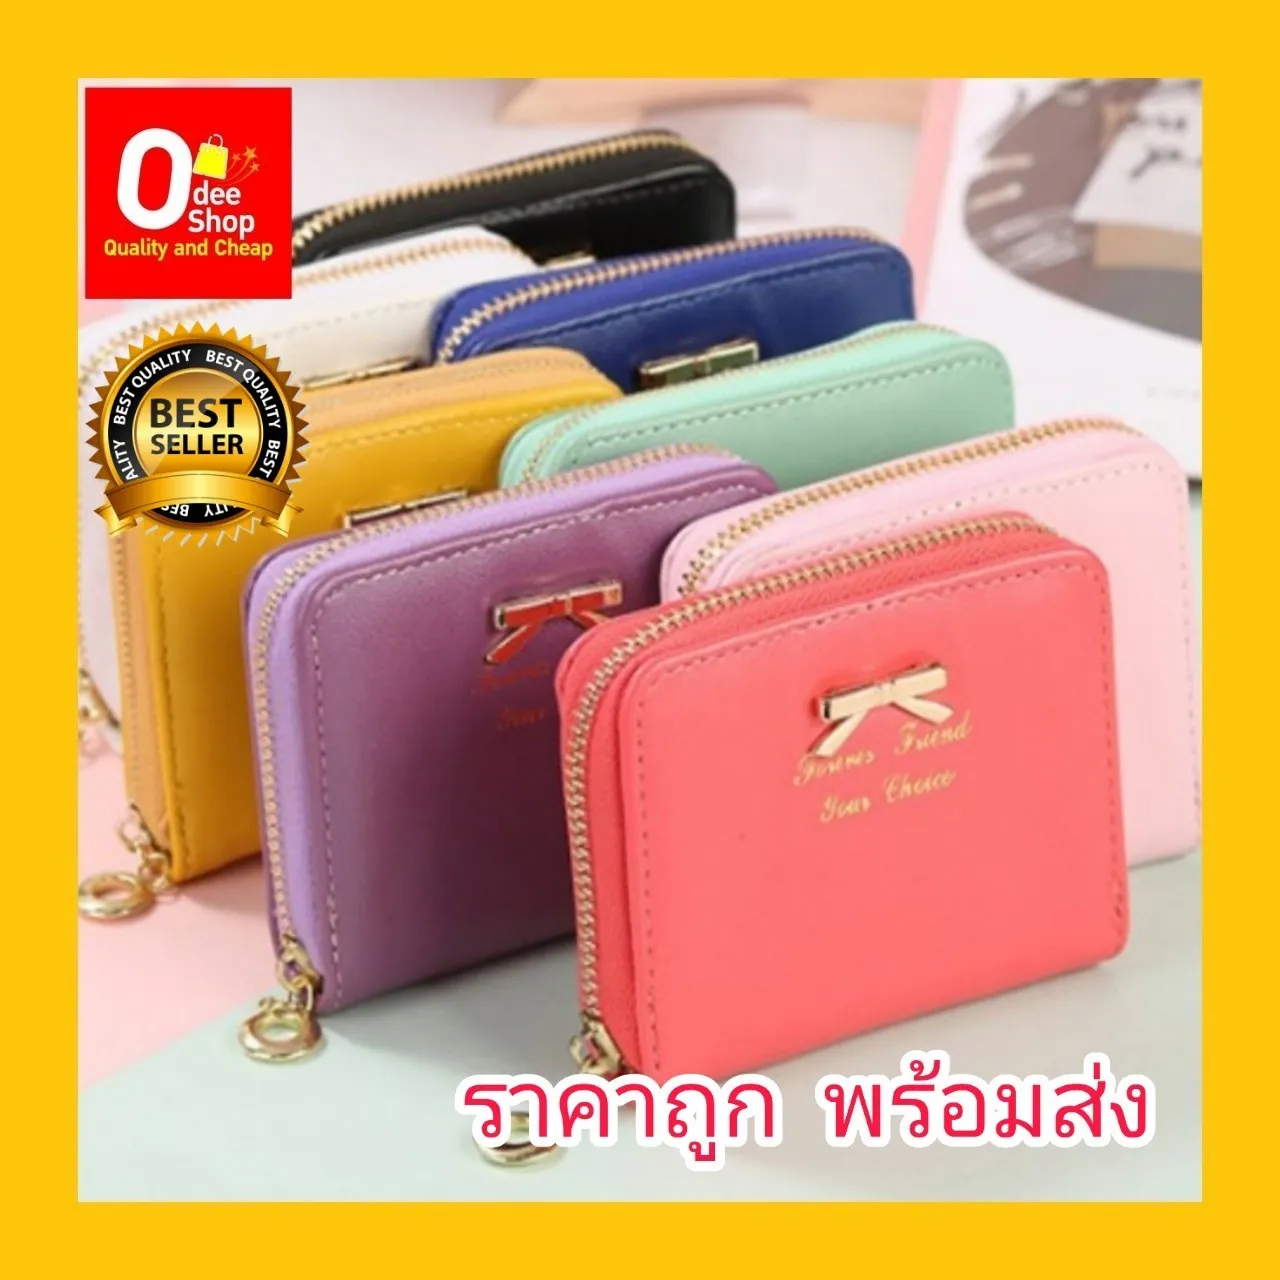 พร้อมส่ง !! OdeeShop มาใหม่ 10 สี กระเป๋าเงิน กระเป๋าเก็บเงิน กระเป๋าสตางค์ กระเป๋าผู้หญิง แฟชั่นเกาหลี ง่ายต่อการพกพา (OD622)